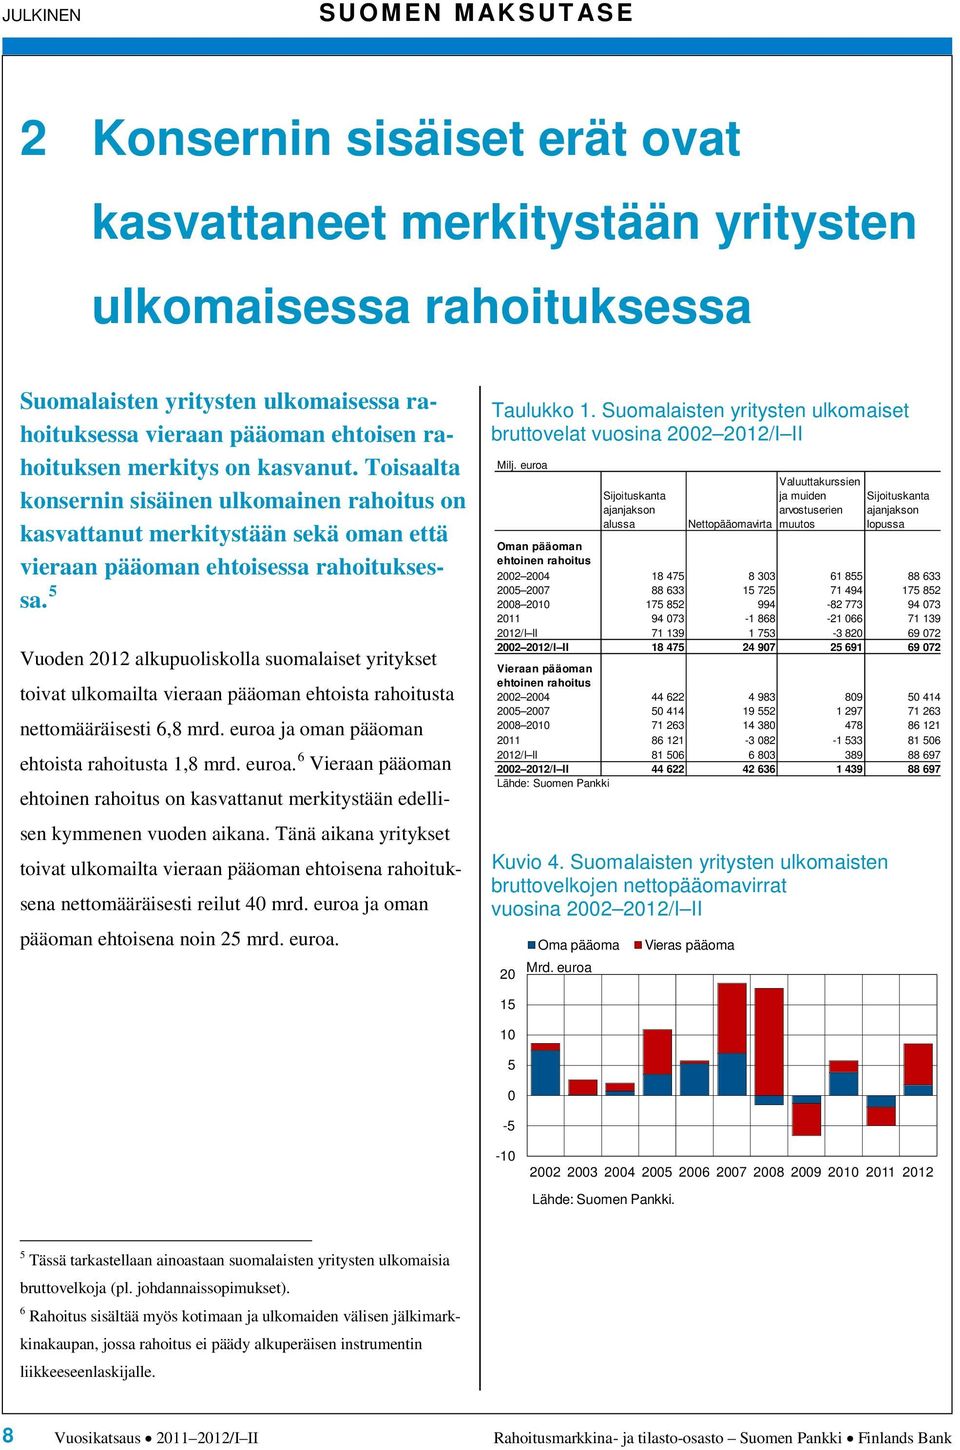 Vuoden 1 alkupuoliskolla suomalaiset yritykset toivat ulkomailta vieraan pääoman ehtoista rahoitusta nettomääräisesti, mrd. euroa 